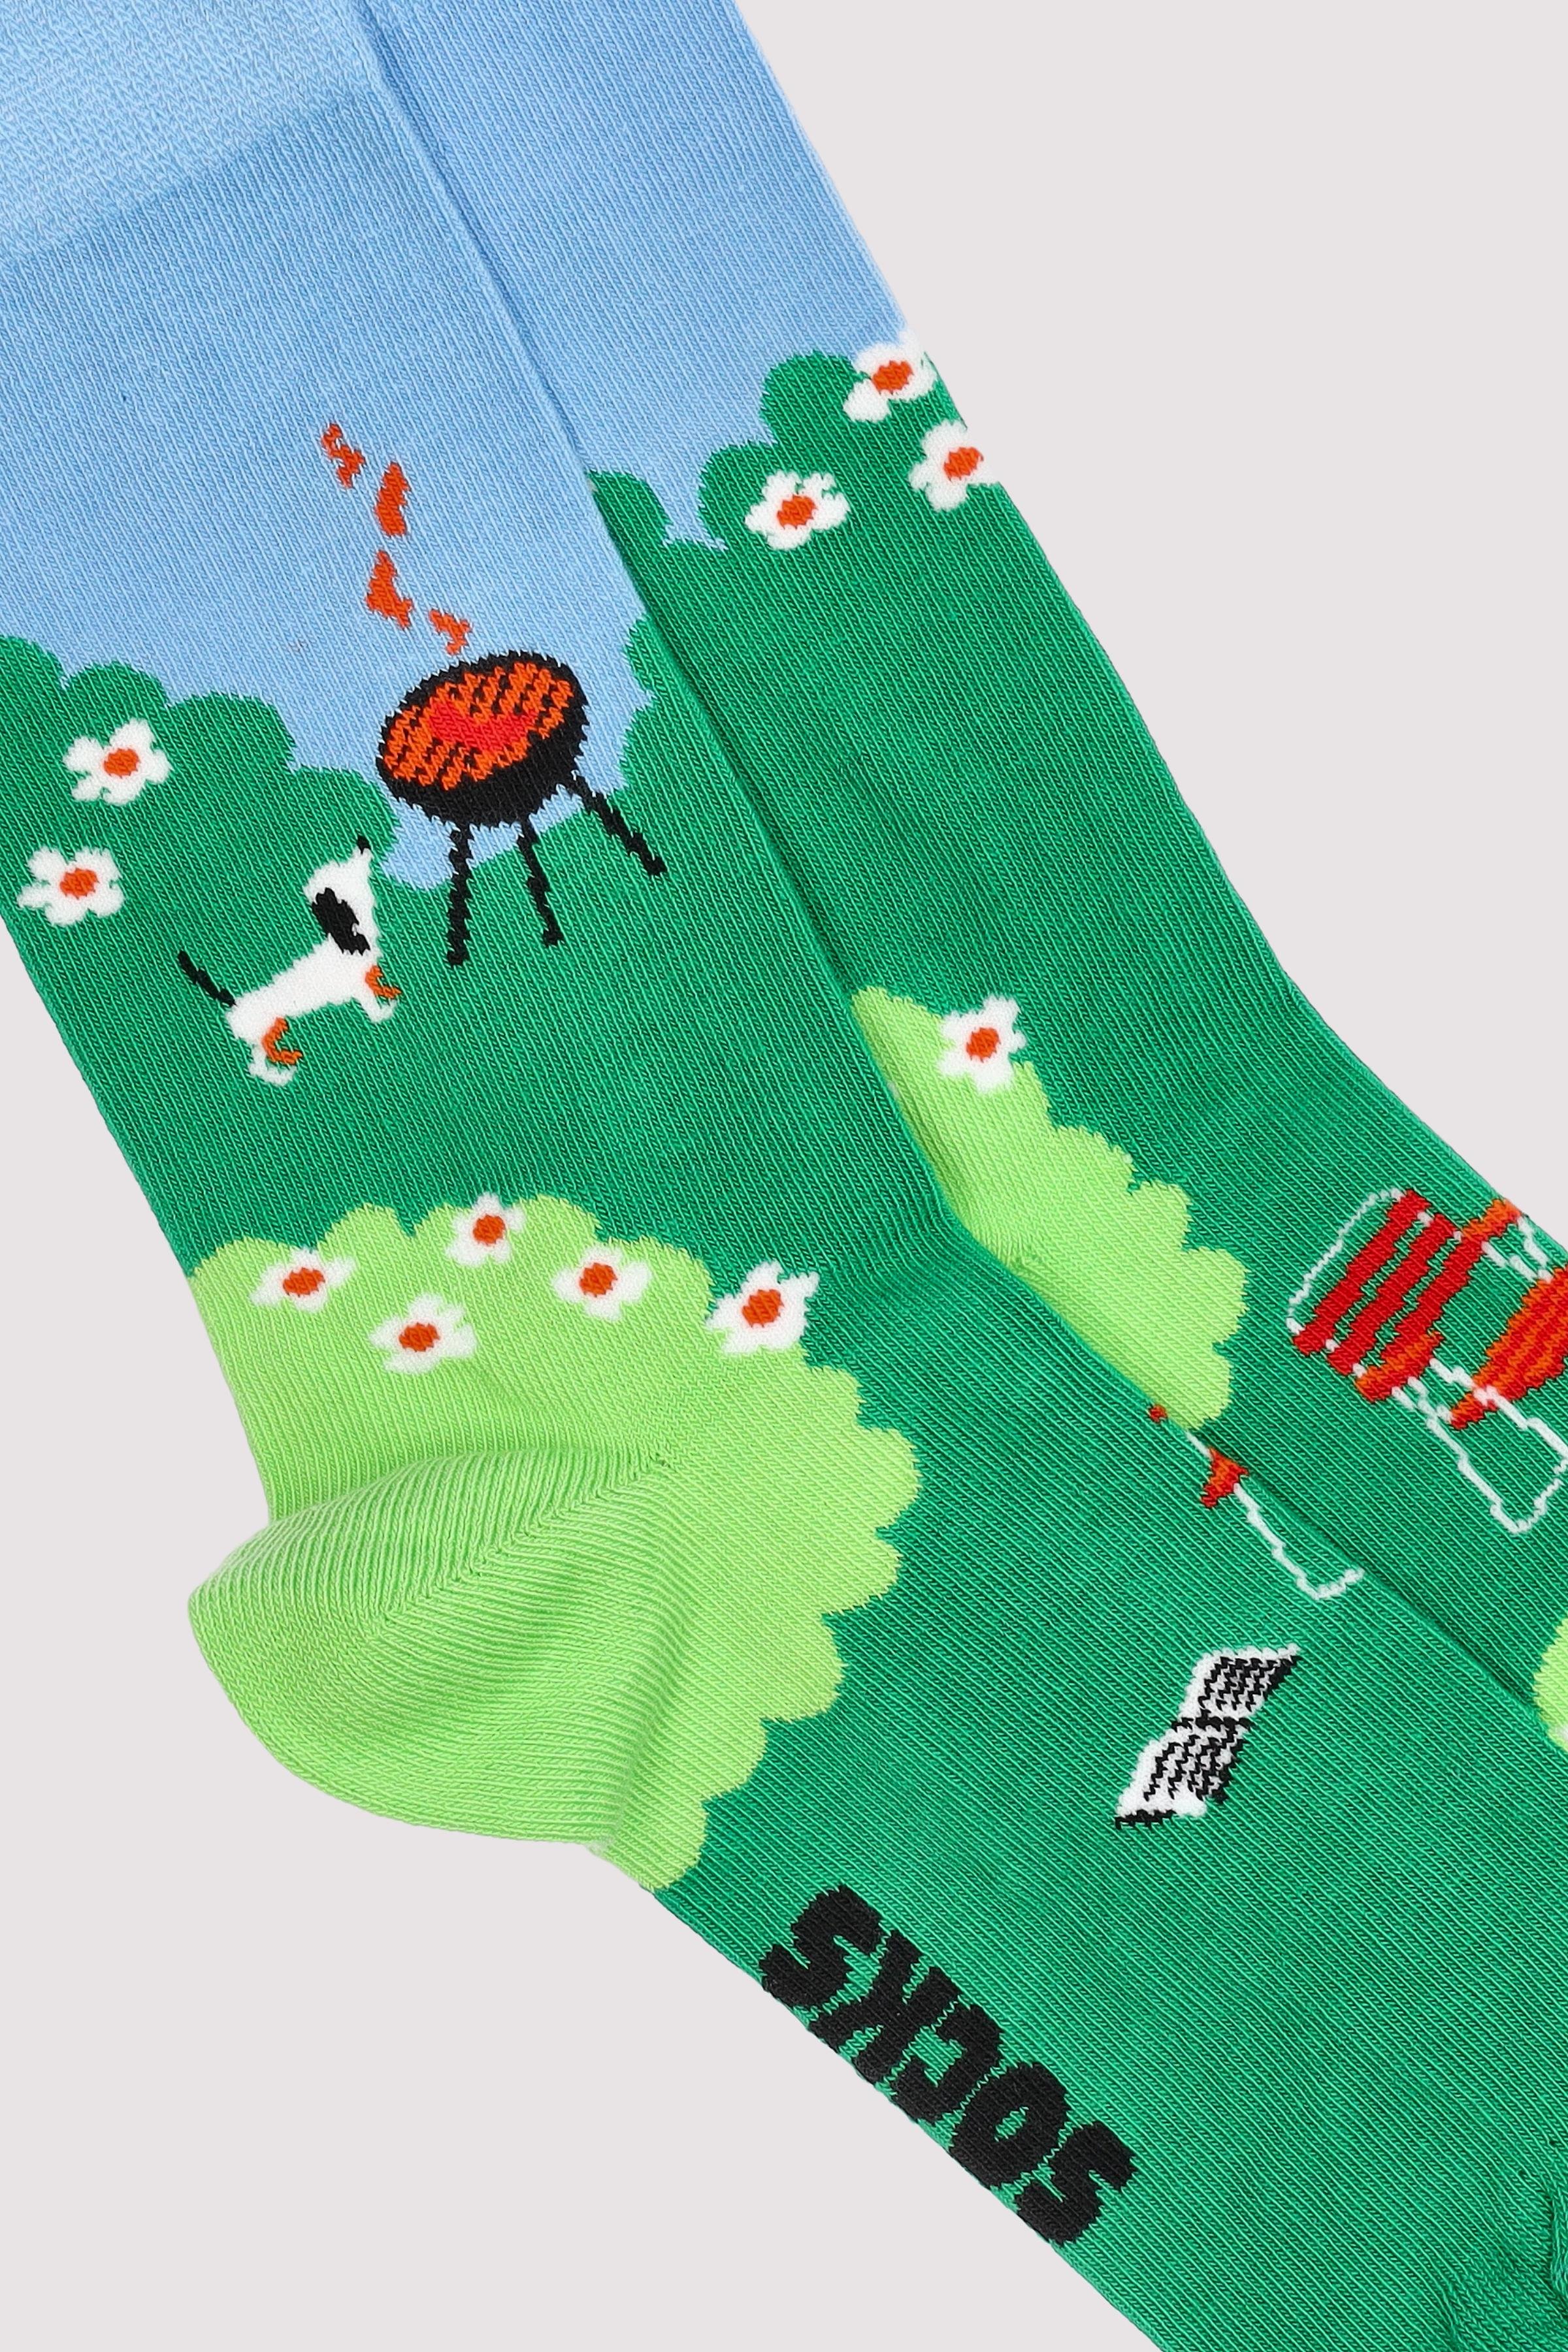 Garden Sock